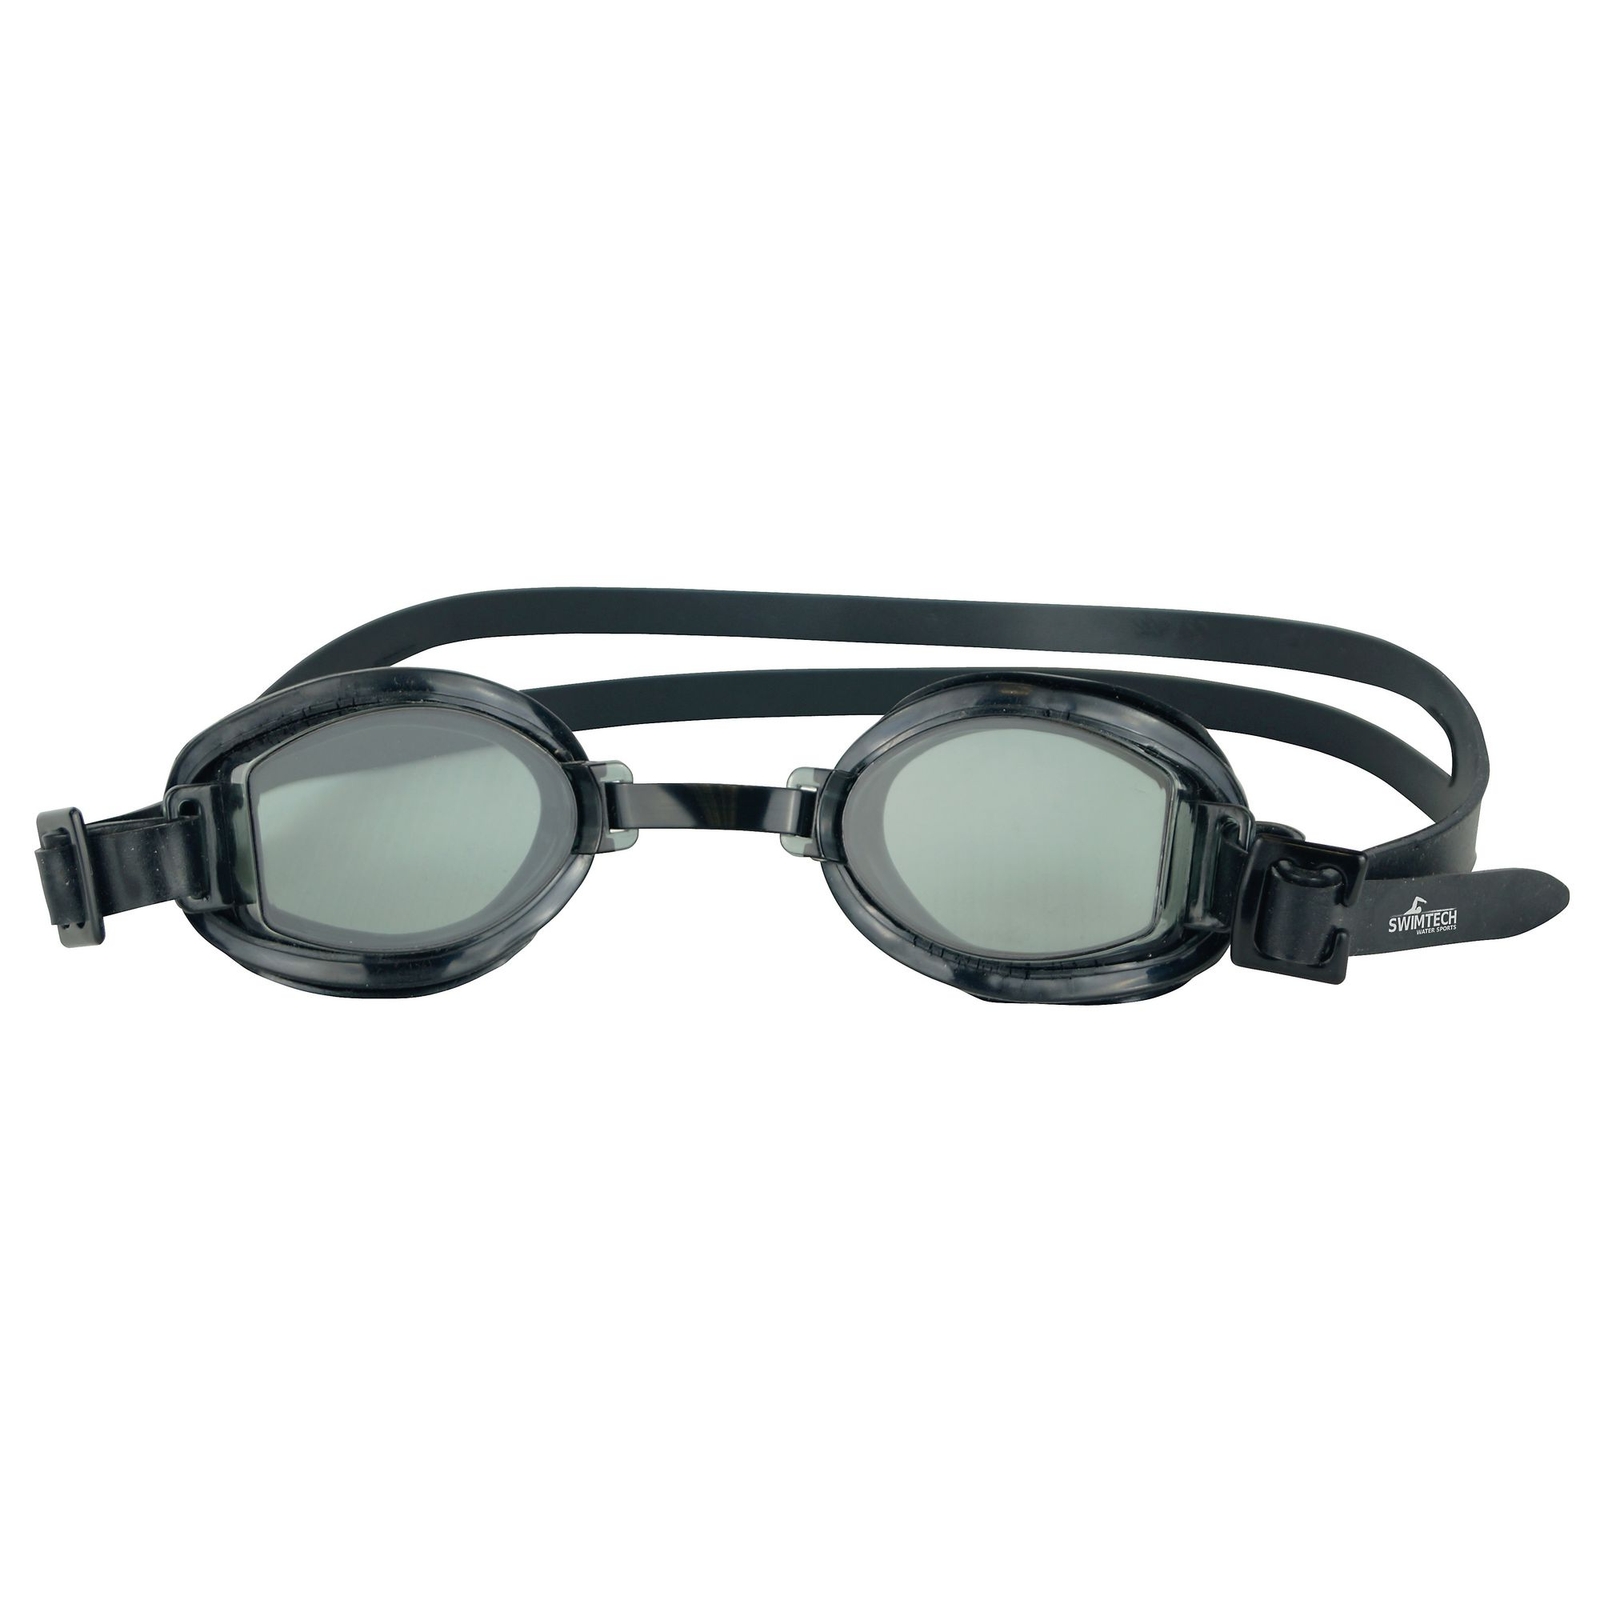 Swim Tech Goggles - Black